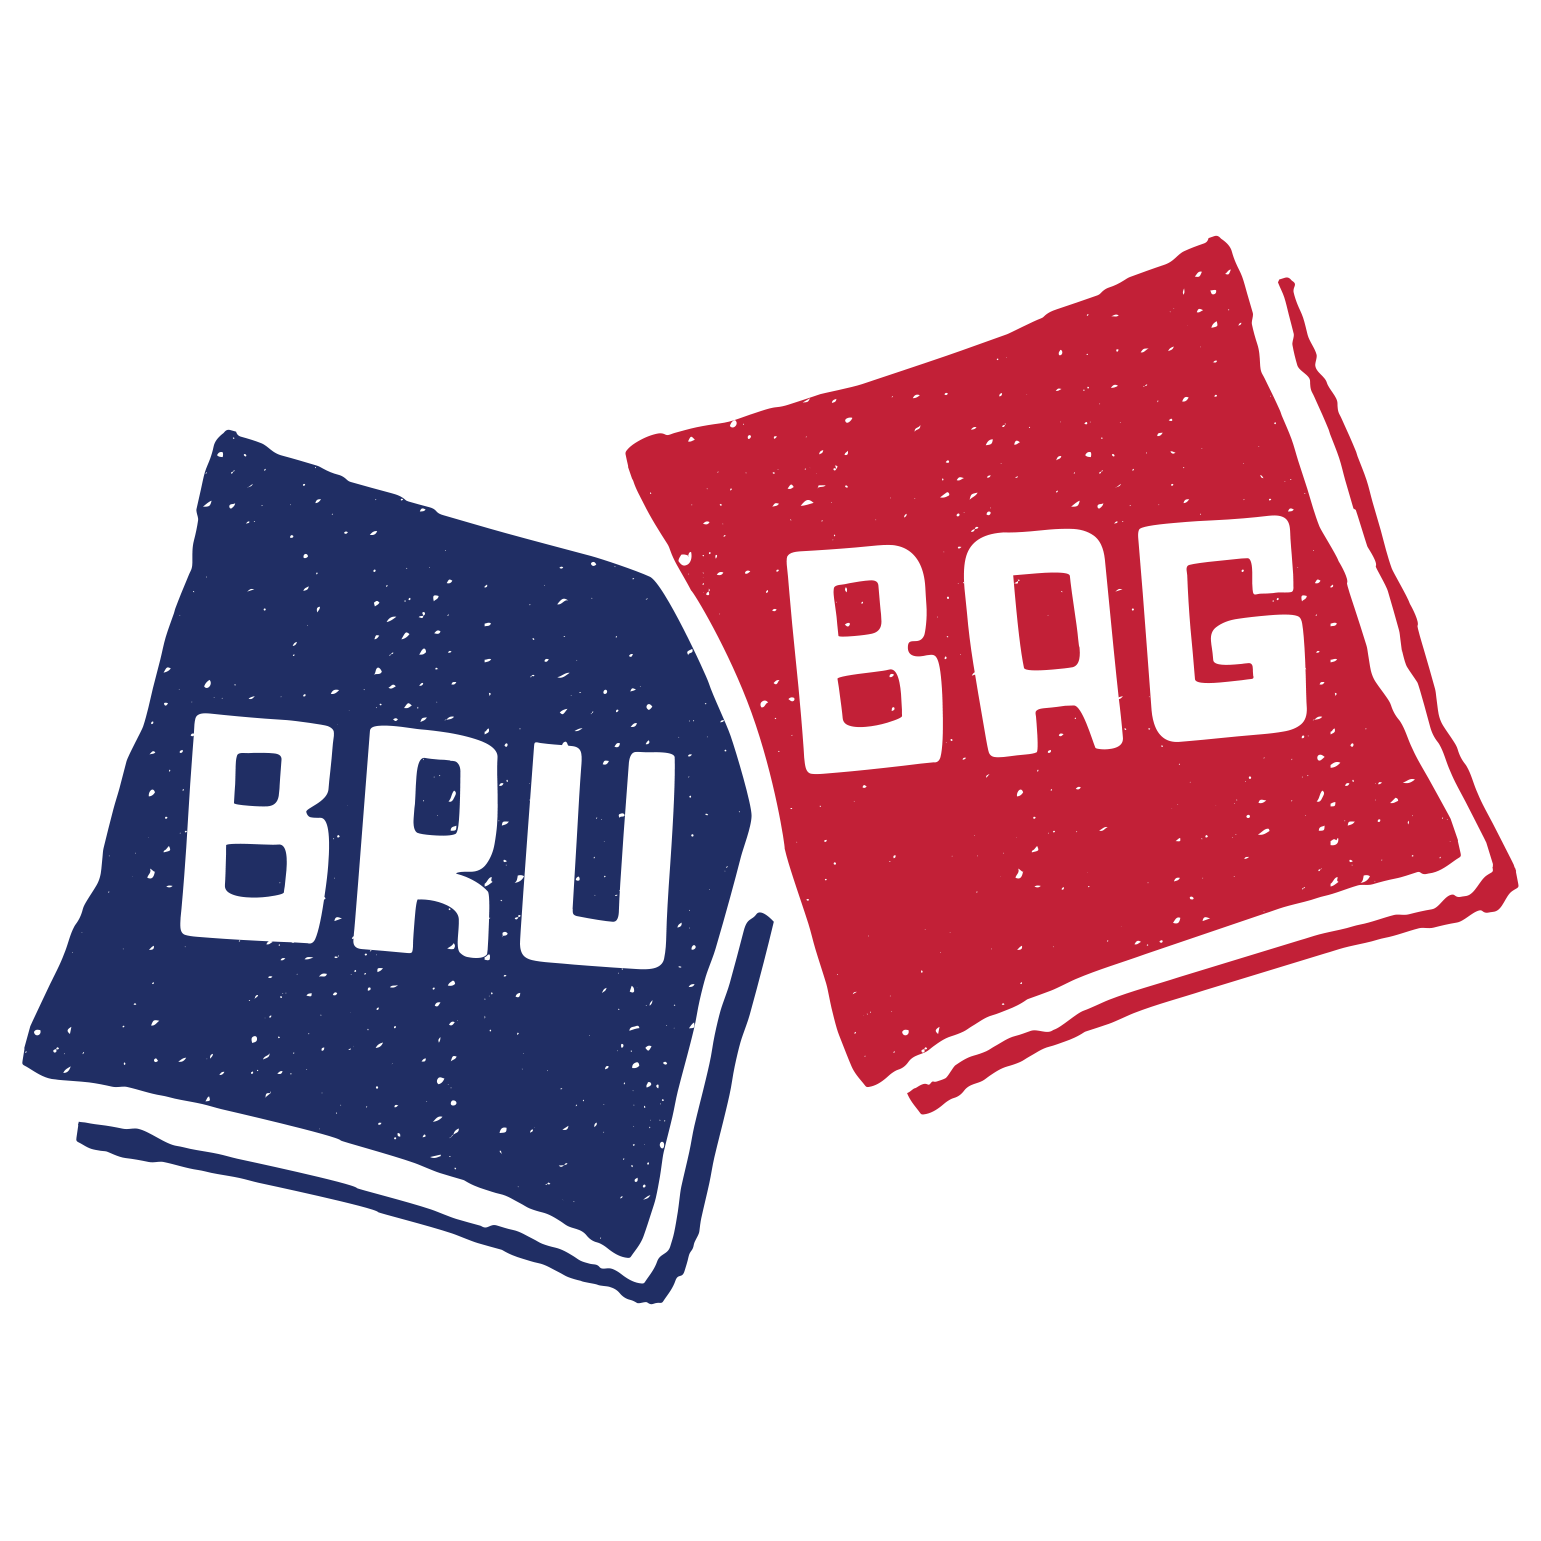 BRUBAG_logo_Official_sq_36952ee1-d4c3-435a-bb67-7fdc0b8d8a21.png